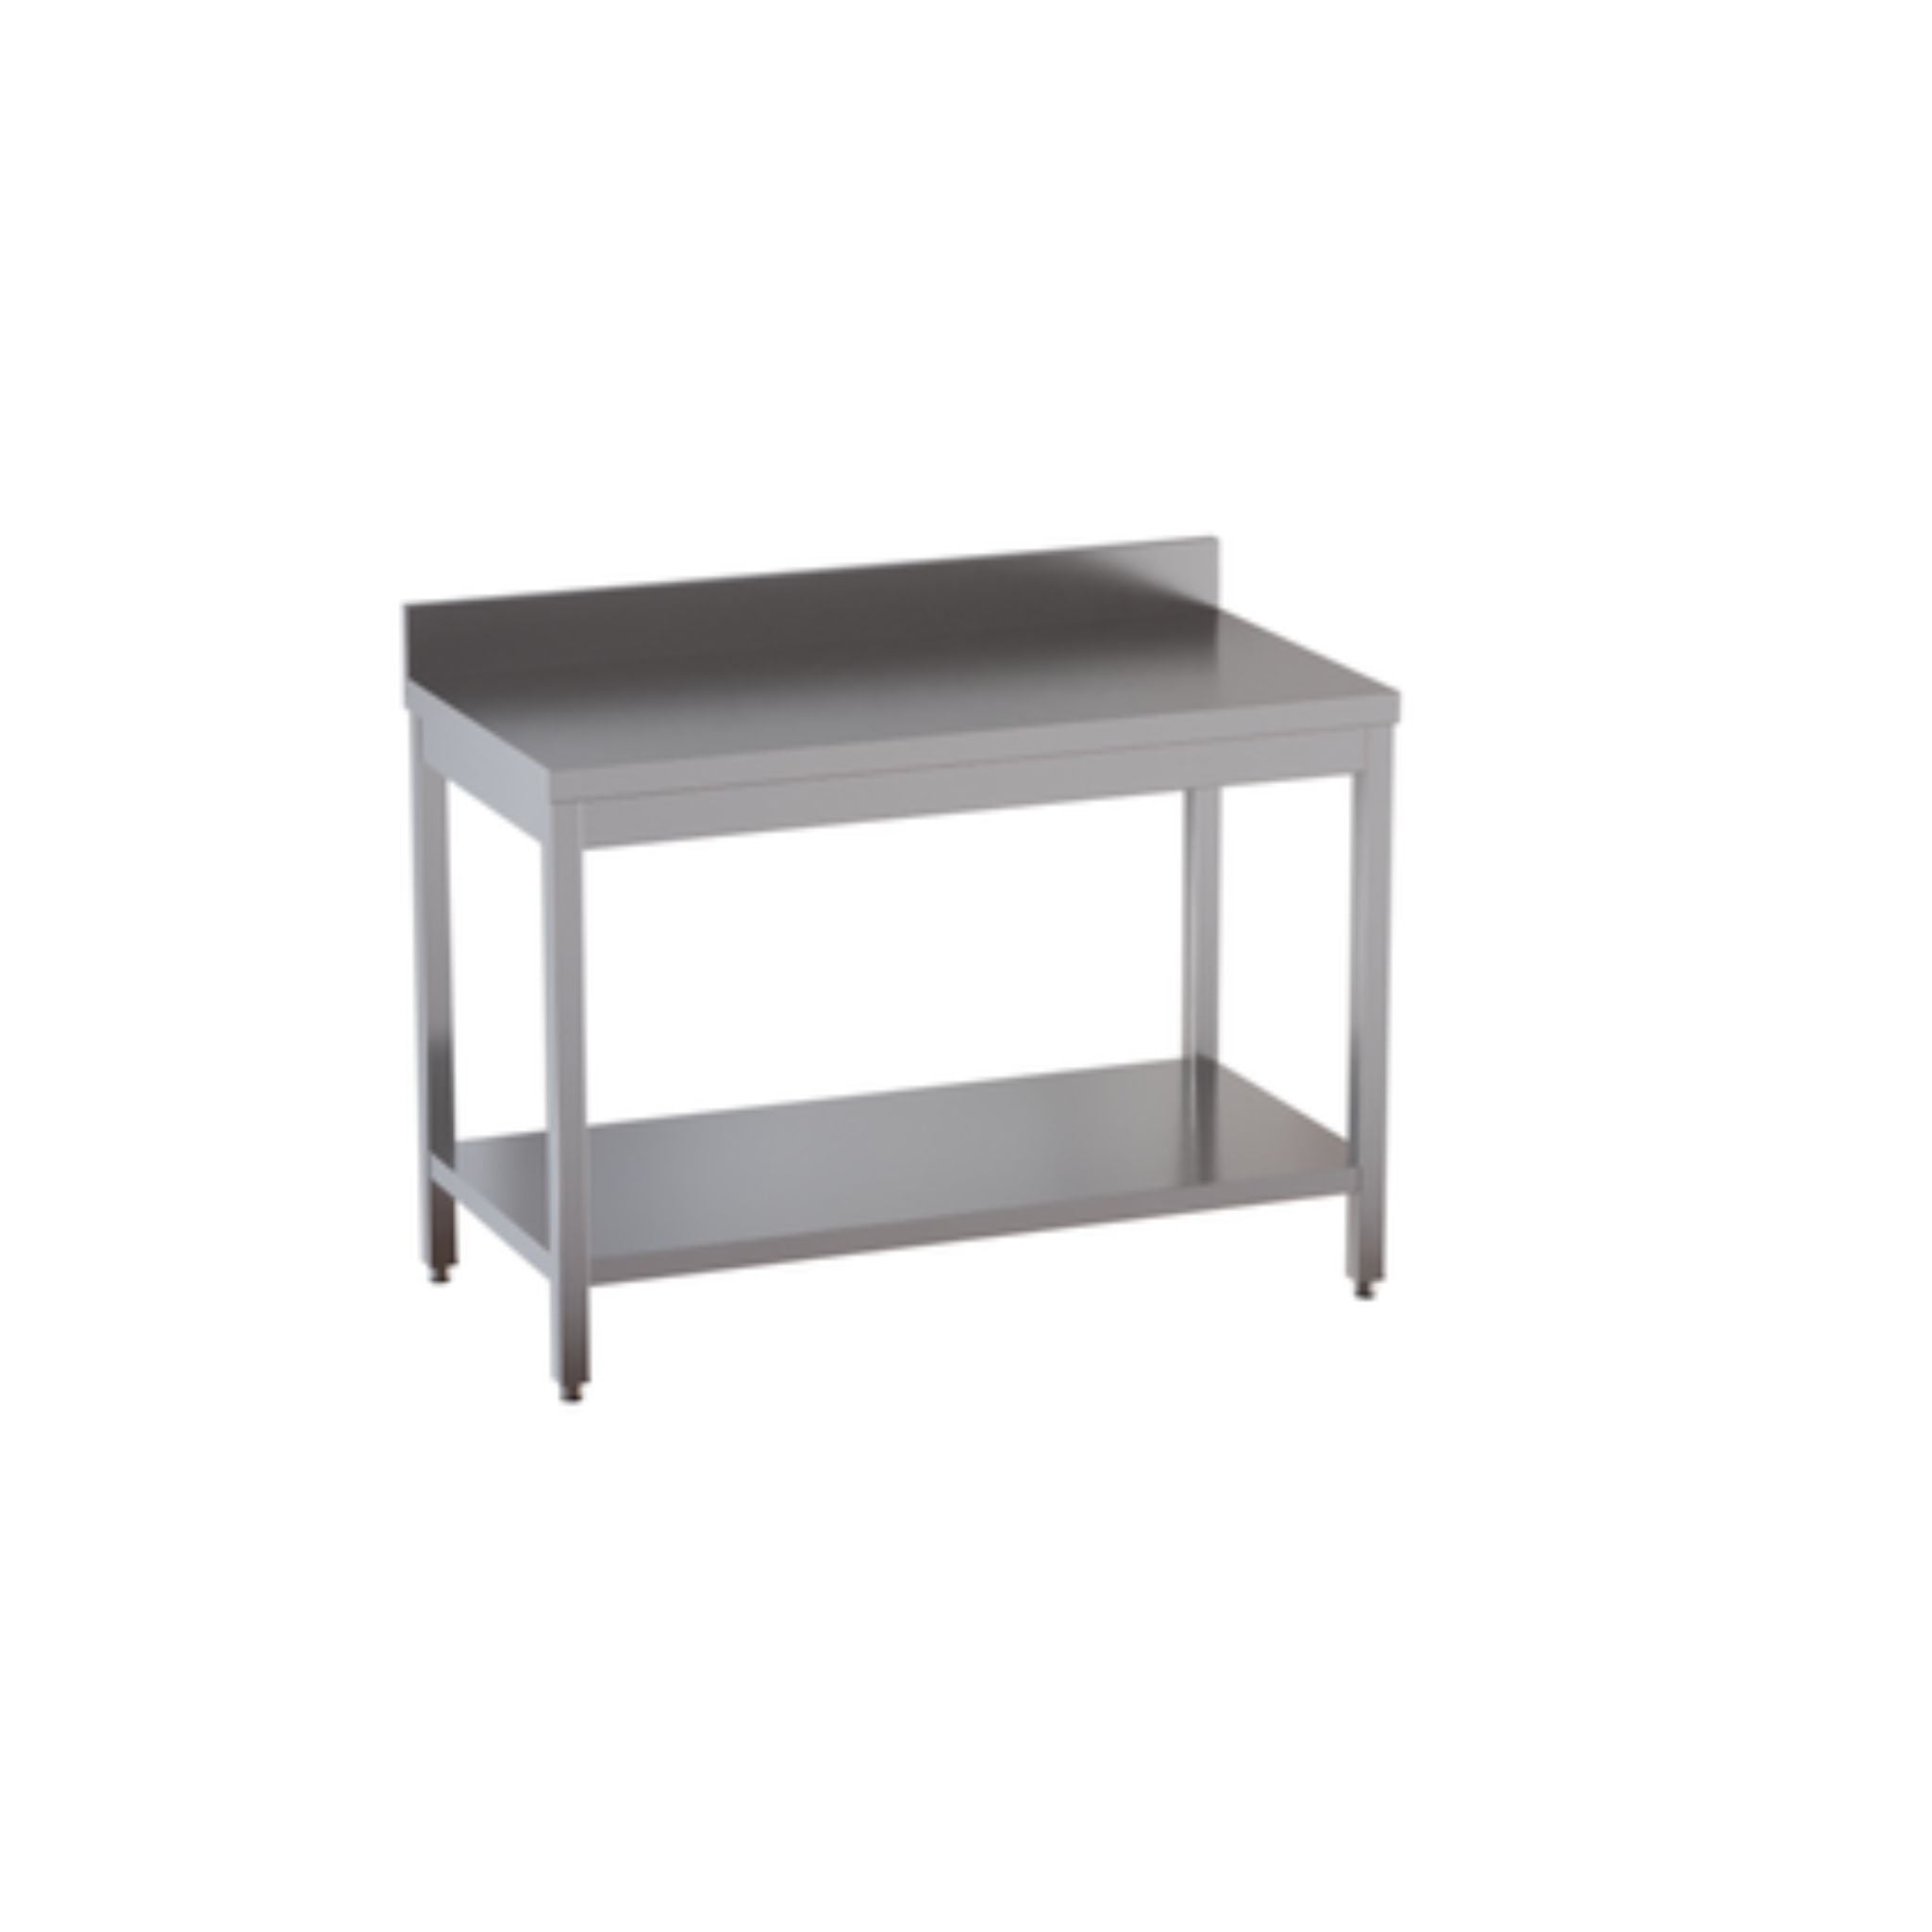 Standard stainless steel worktable